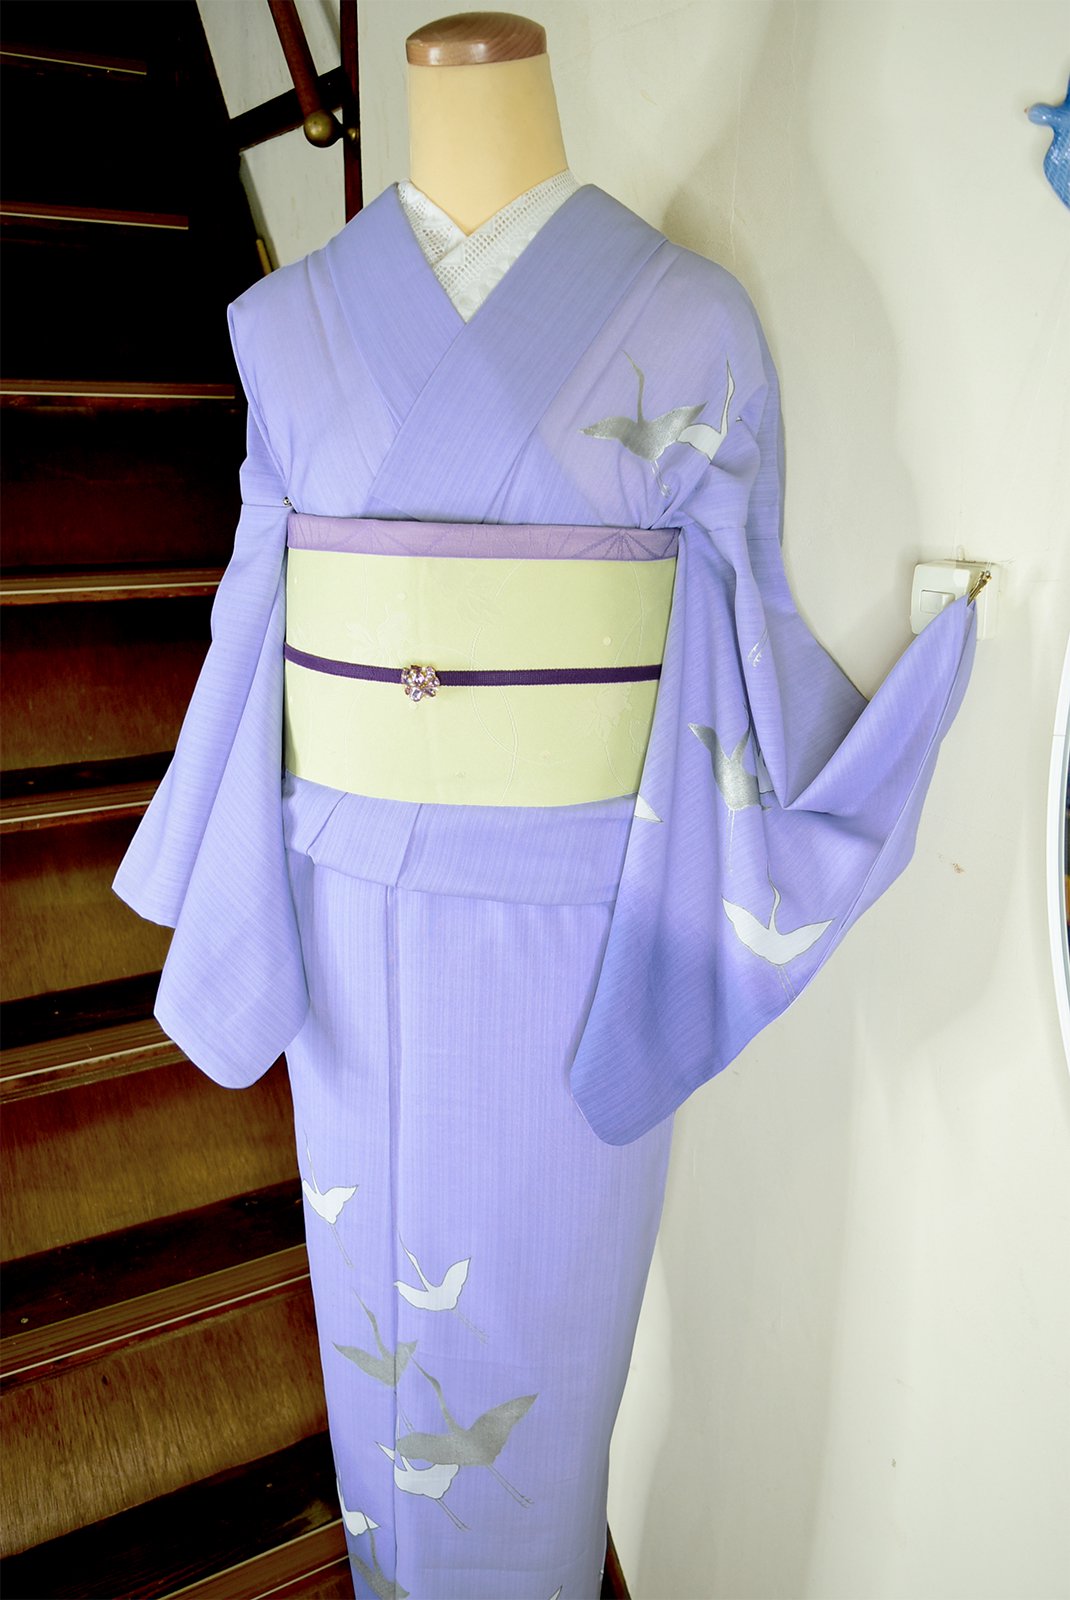 藤紫のぼかしに鶴の舞姿美しい高級化繊夏付け下げ - アンティーク着物 ...